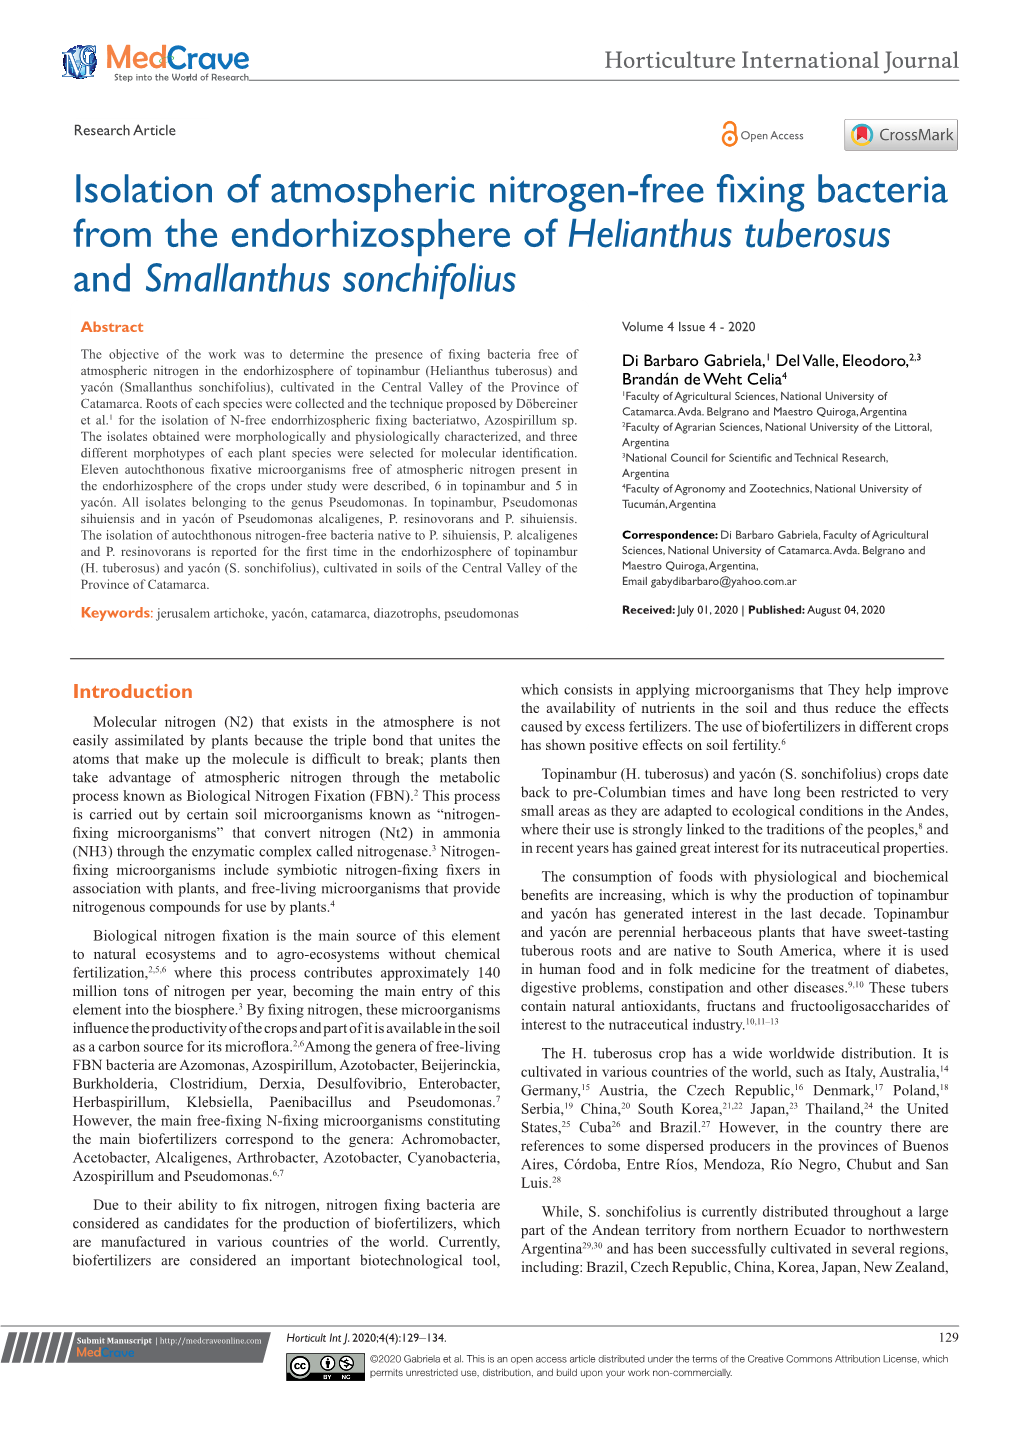 Isolation of Atmospheric Nitrogen-Free Fixing Bacteria from the Endorhizosphere of Helianthus Tuberosus and Smallanthus Sonchifolius